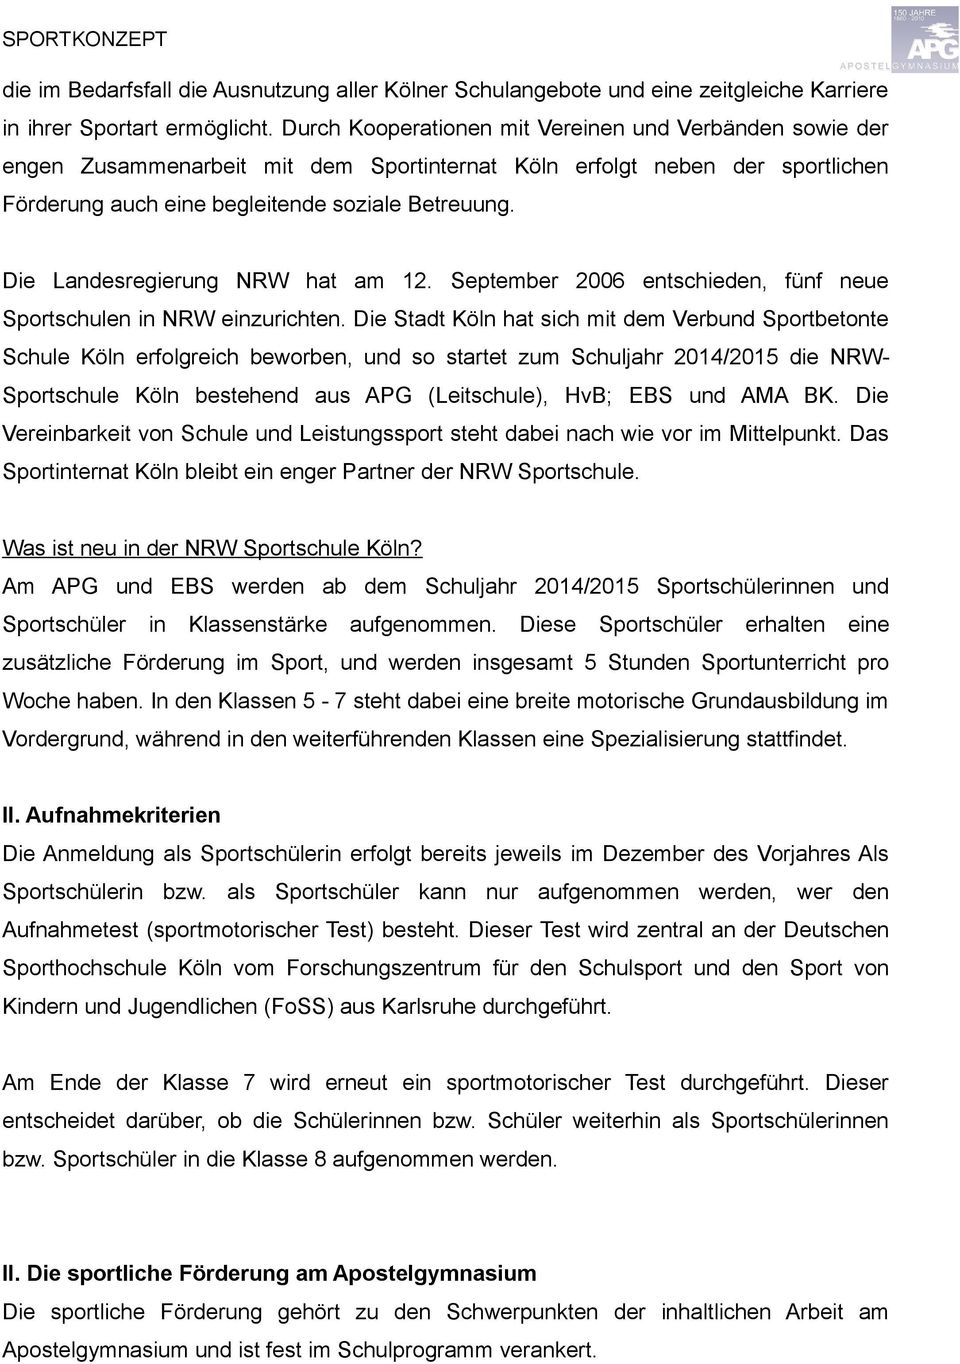 Die Landesregierung NRW hat am 12. September 2006 entschieden, fünf neue Sportschulen in NRW einzurichten.